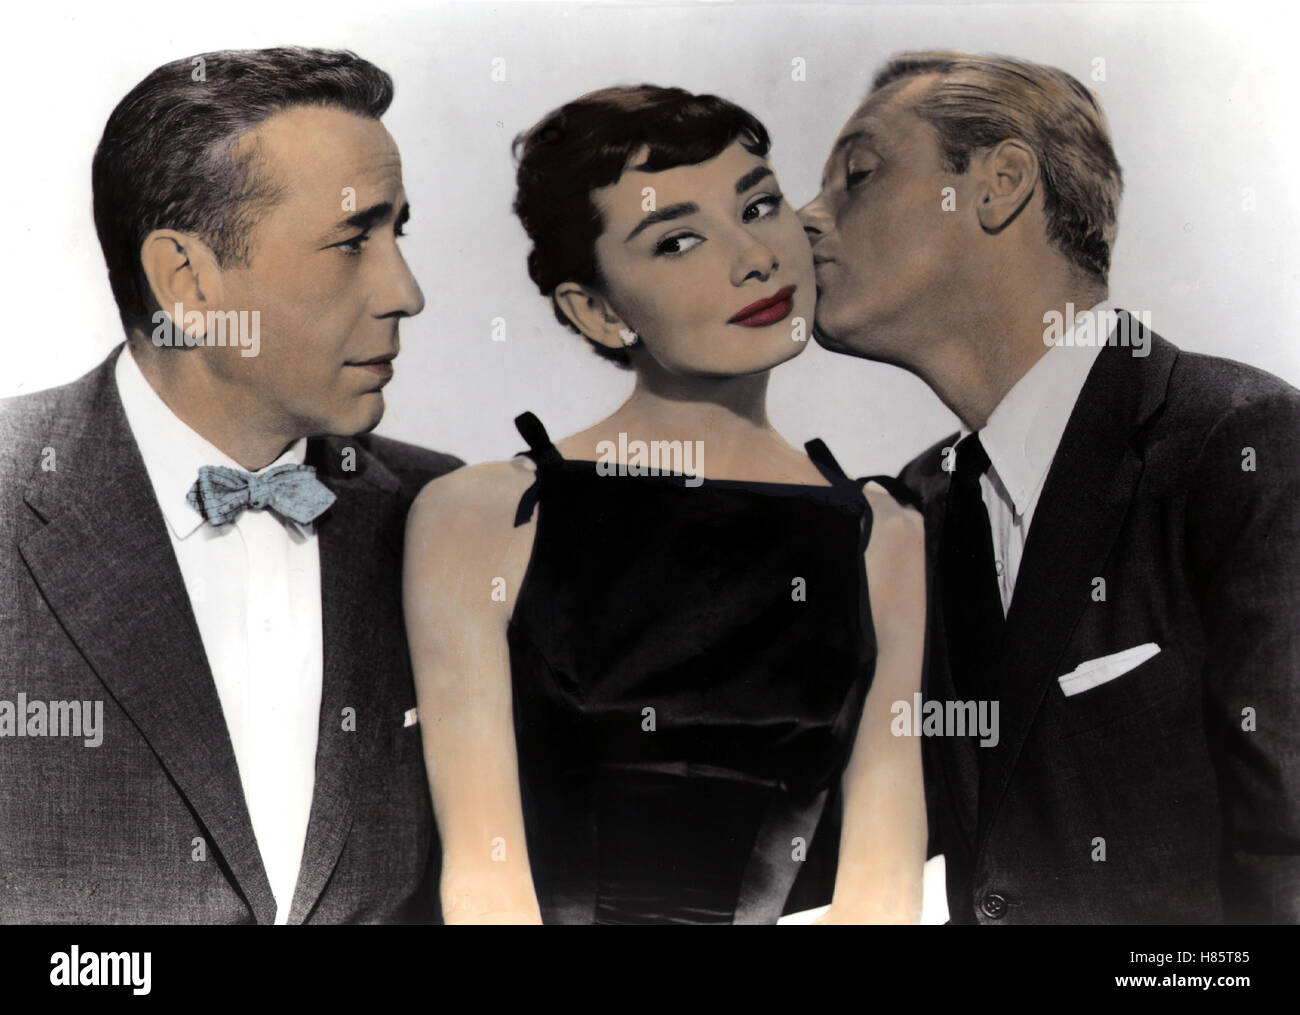 Sabrina, (SABRINA) USA 1954 s/w, Regie: Billy Wilder, HUMPHREY BOGART, AUDREY HEPBURN, WILLIAM HOLDEN, Key: Kuss Stock Photo